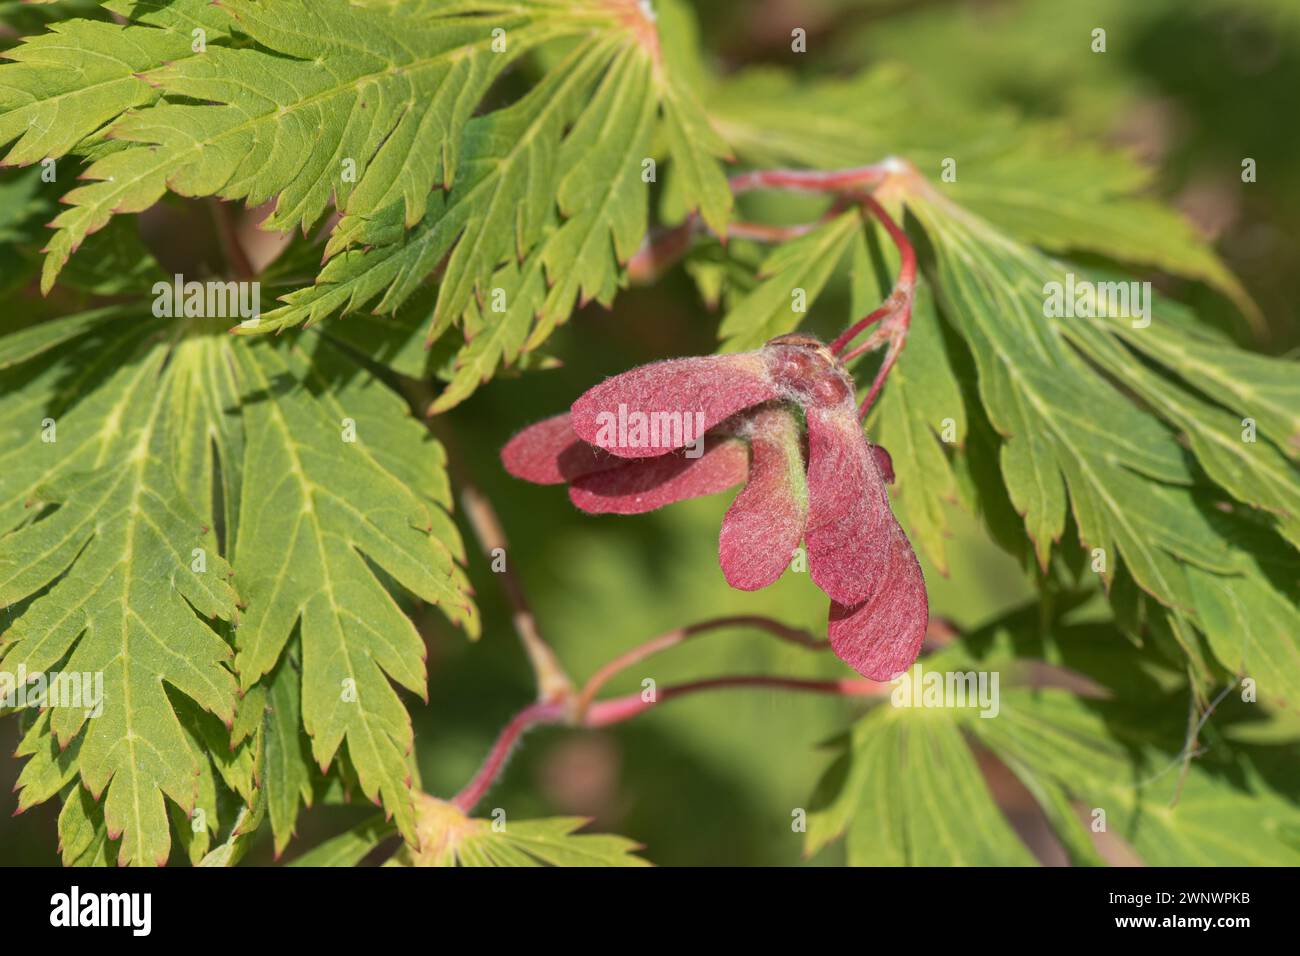 Paires de samaras rouges ailées sur un érable japonais (Acer palmatum) contre de jolies feuilles vert pâle profondément disséquées d'un arbre ornemental. Juin Banque D'Images